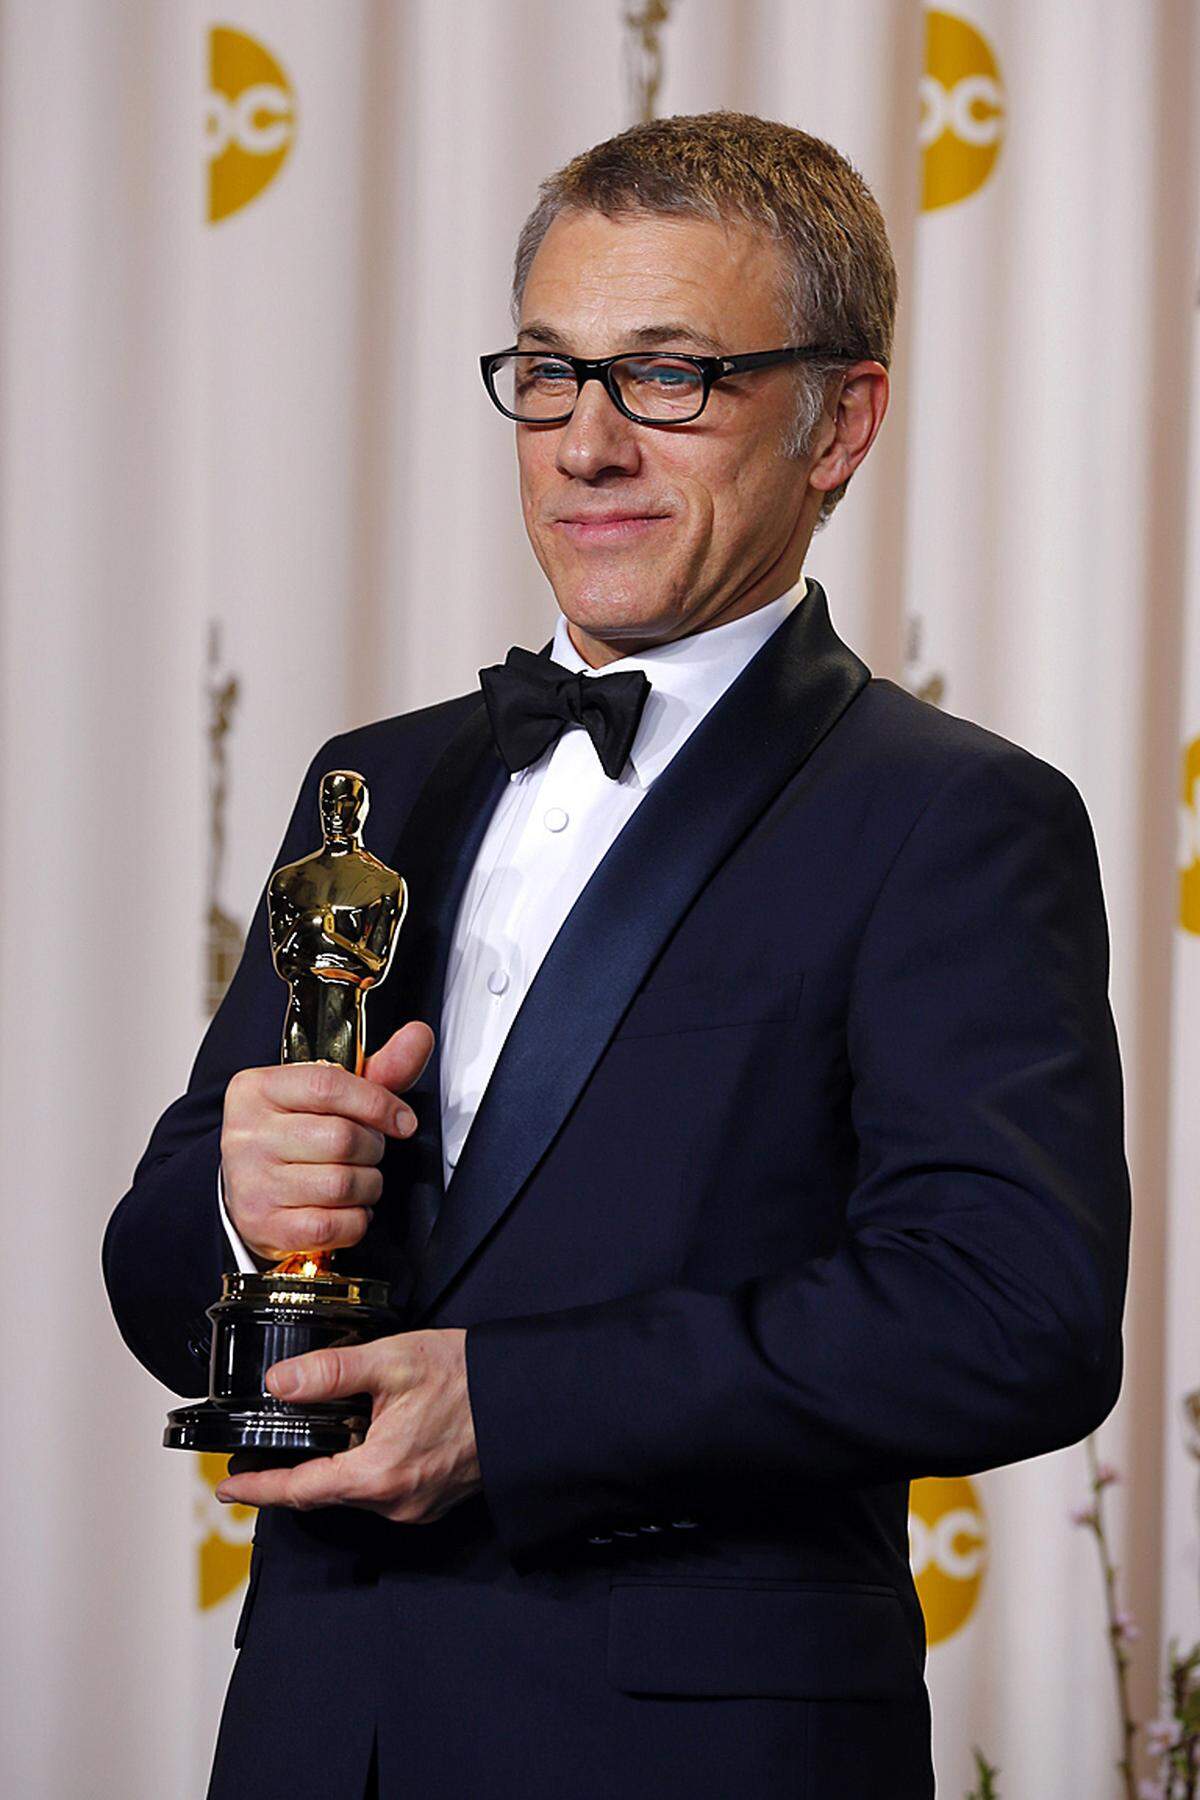 Die Verleihung der 85. Oscars am 24. Februar 2013 war ein historischer Abend für Österreich: Michael Haneke wurde für "Amour" mit dem Oscar für den besten fremdsprachigen Film ausgezeichnet. Christoph Waltz holte seine zweite Trophäe innerhalb von drei Jahren: Nach 2010 erhielt er zum zweiten Mal den Oscar für den Besten Nebendarsteller.